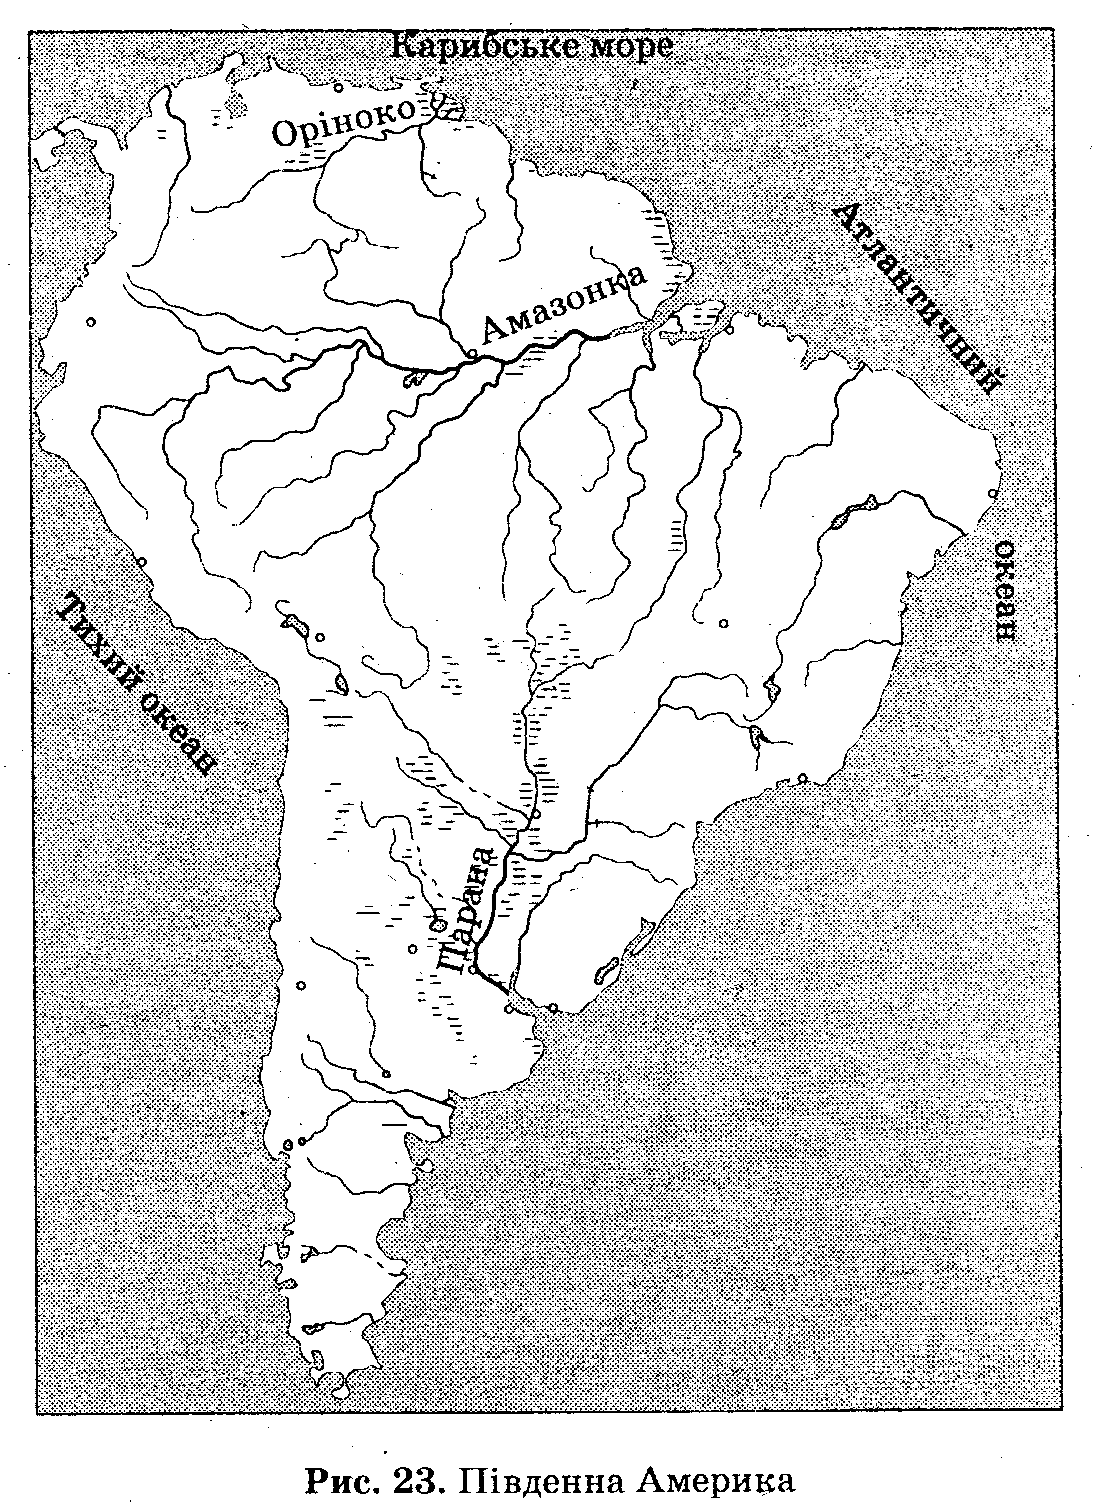 Водопады южной америки контурная карта. Крупнейший реки и озера Южной Америки на карте. Озера Южной Америки на контурной карте. Реки Южной Америки на контурной карте. Крупные реки и озера Южной Америки на контурной карте.